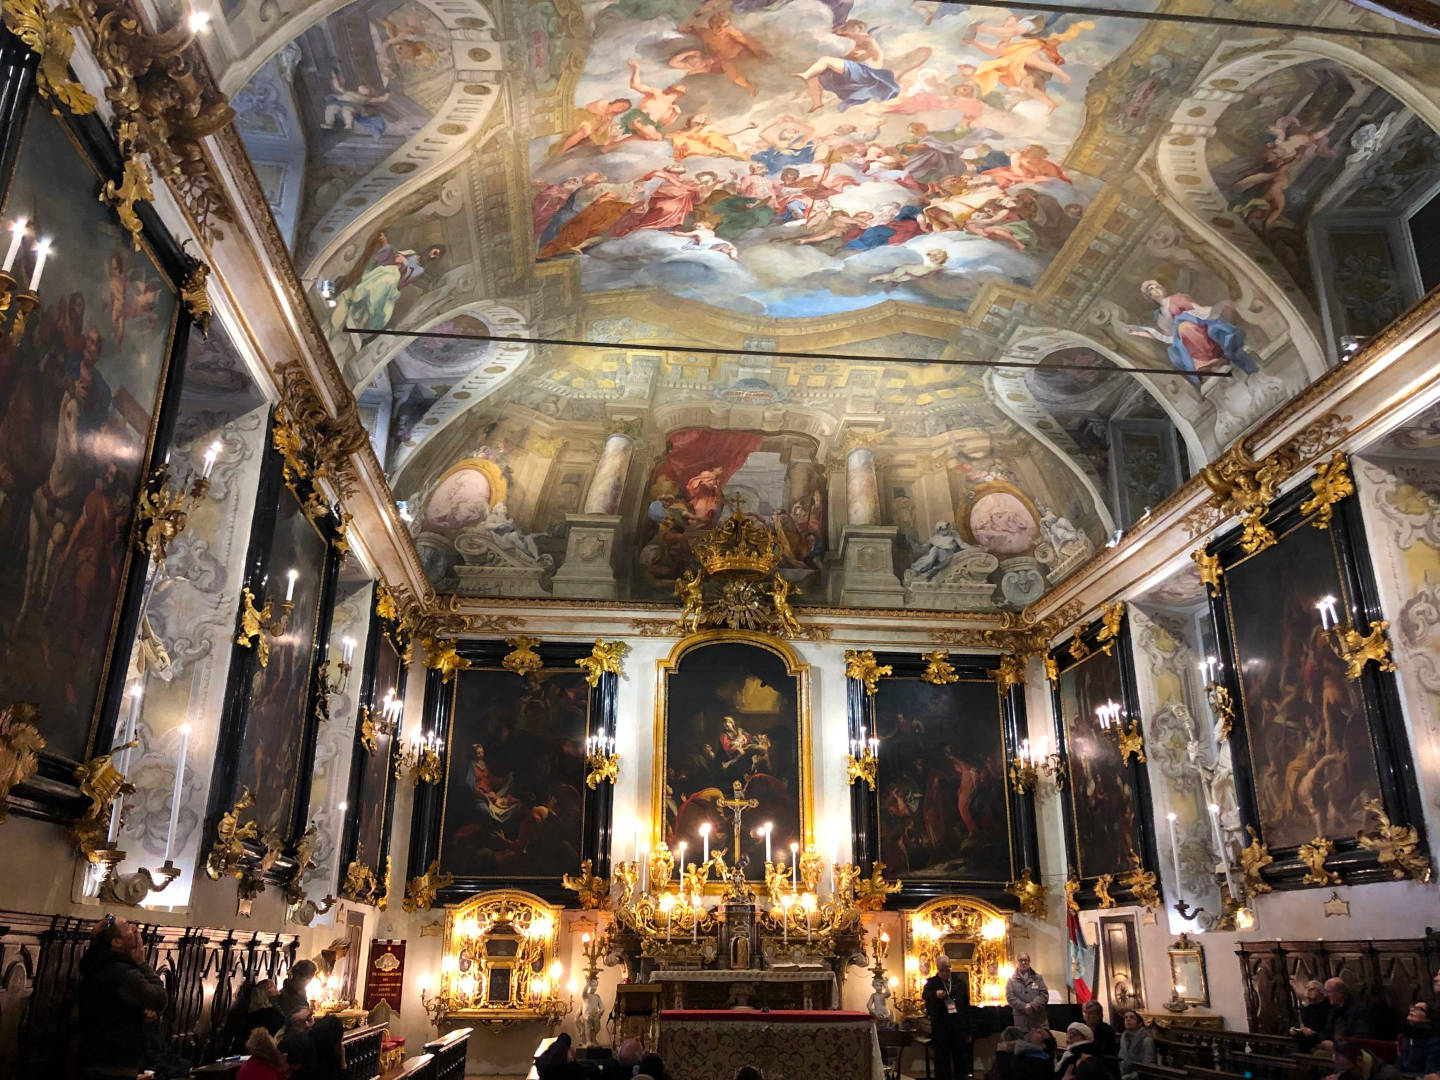 Passeggiata olfattiva: I Profumi di Torino - Cappella dei mercanti